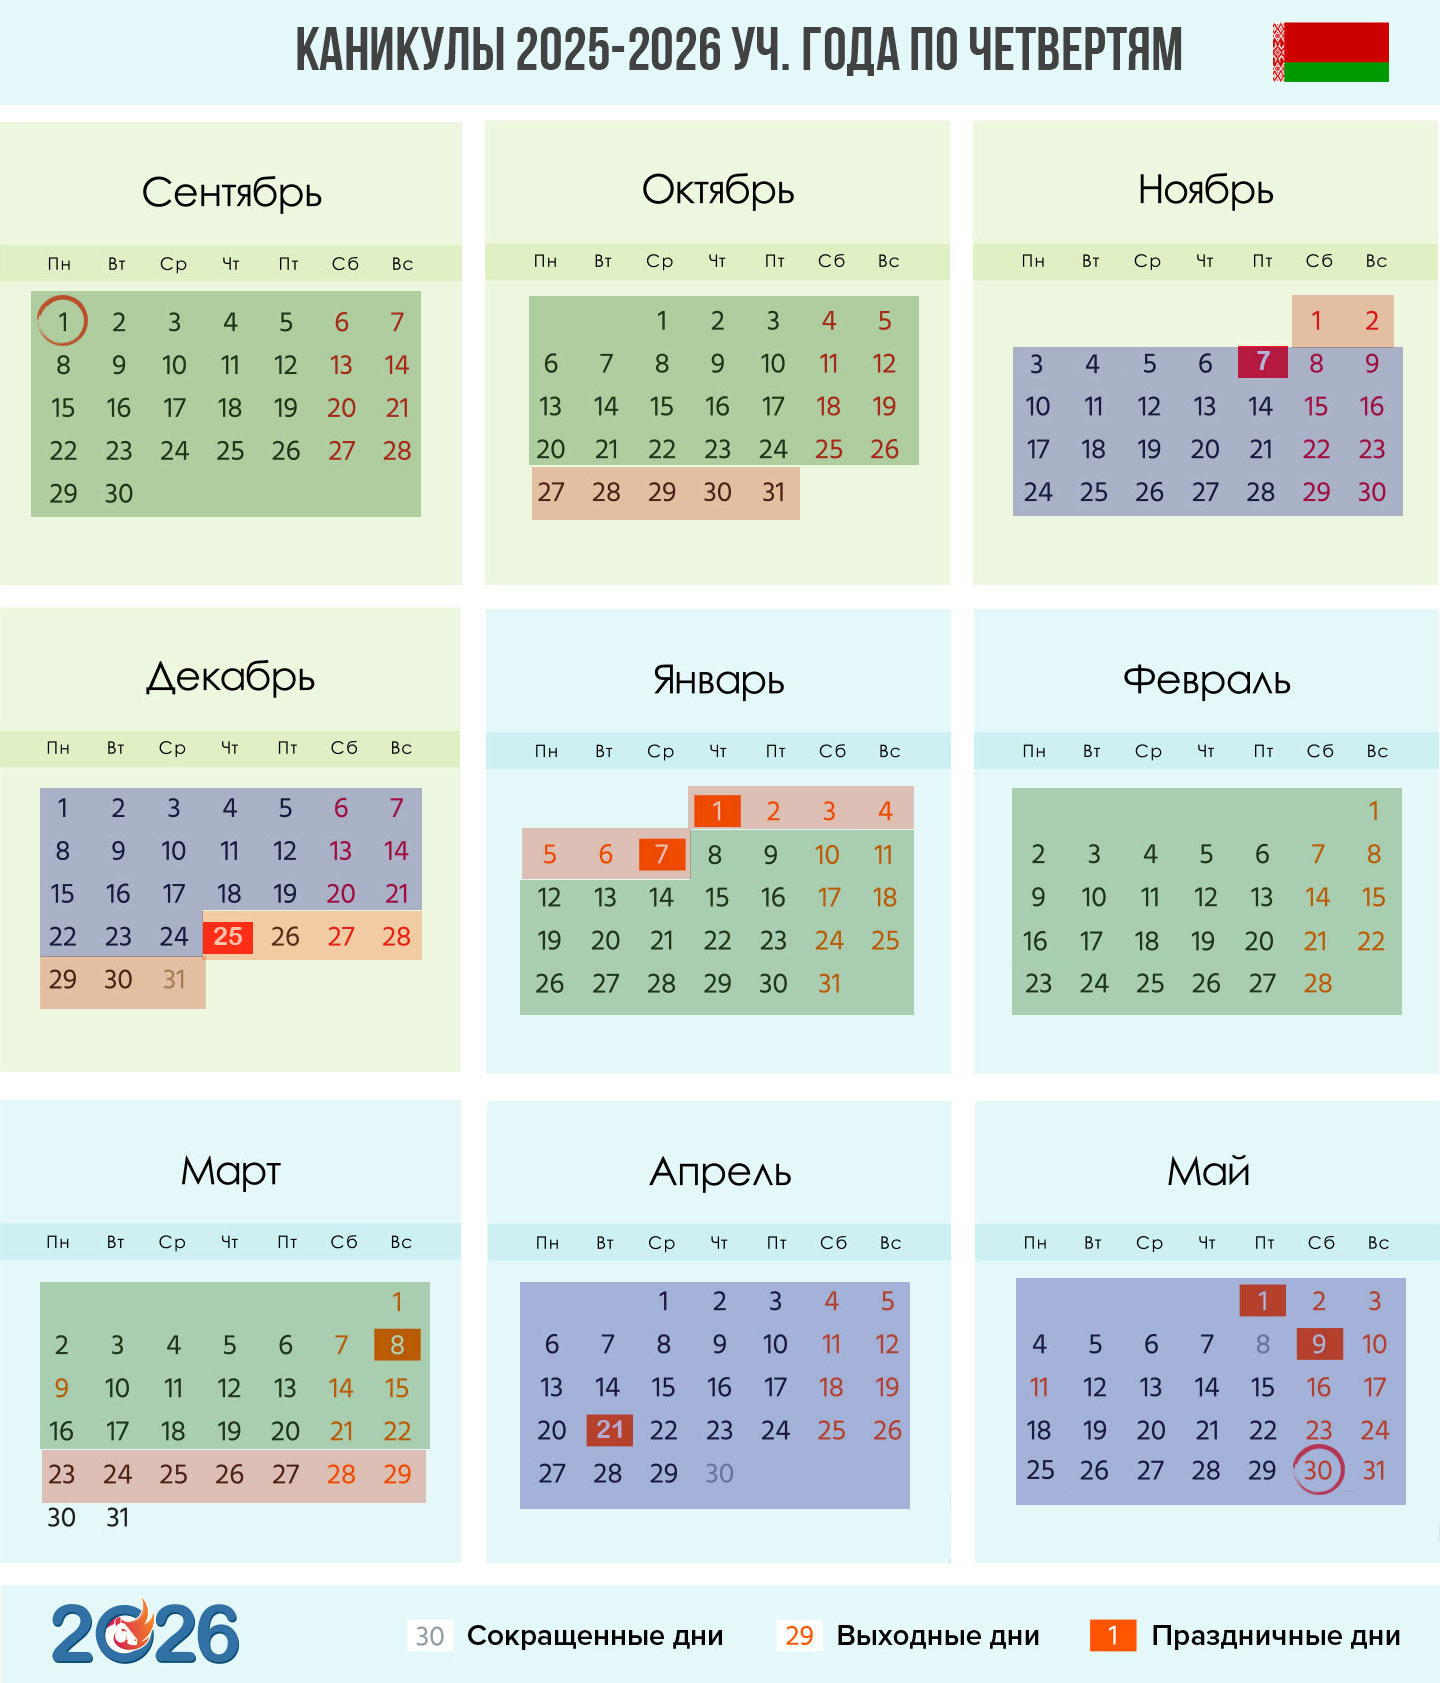 Календарь каникул на 2025-2026 учебный год для РБ